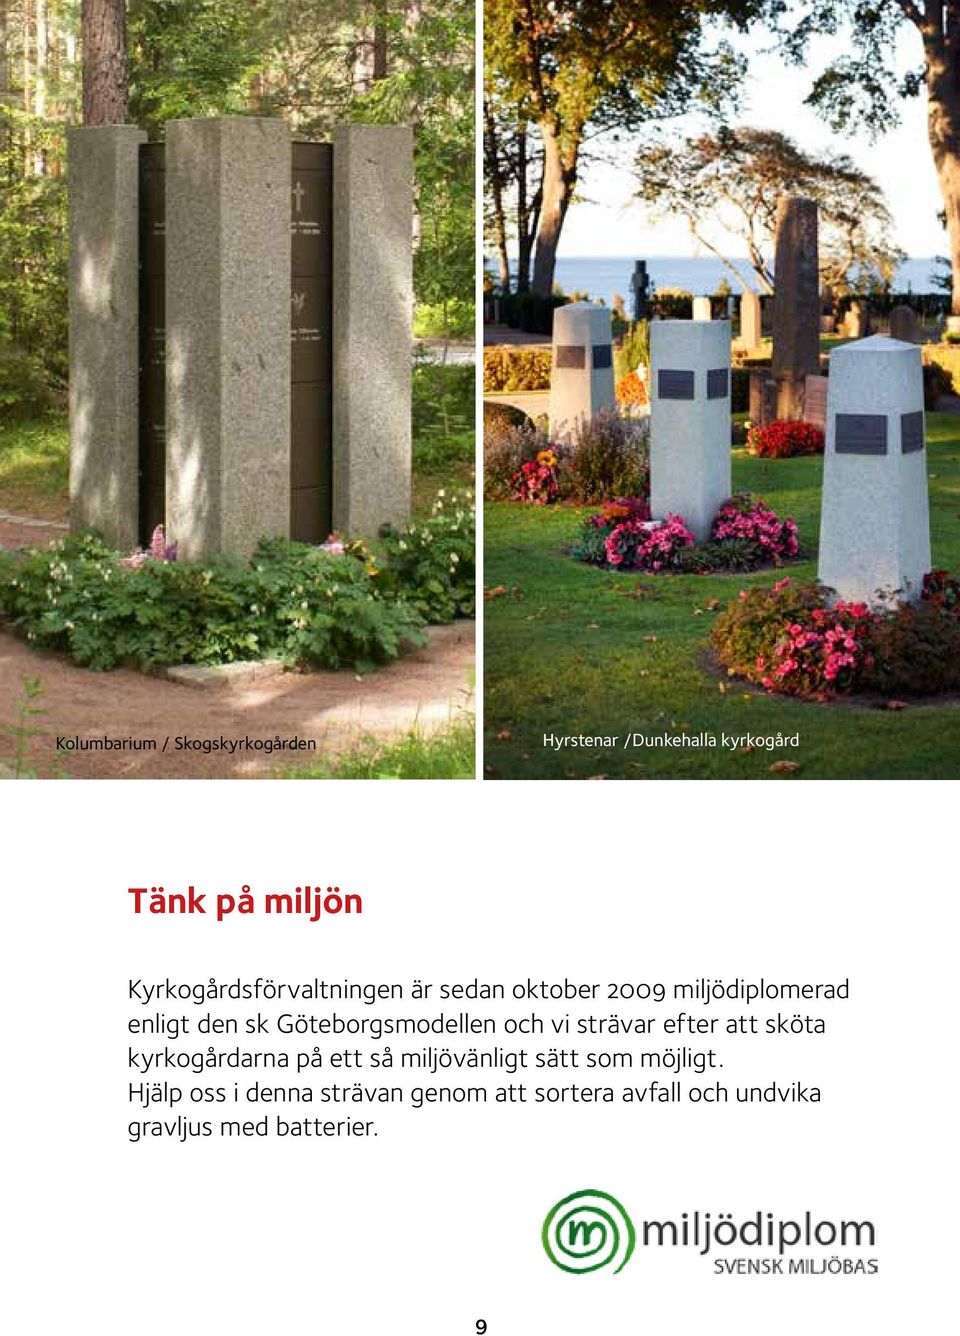 Göteborgsmodellen och vi strävar efter att sköta kyrkogårdarna på ett så miljövänligt